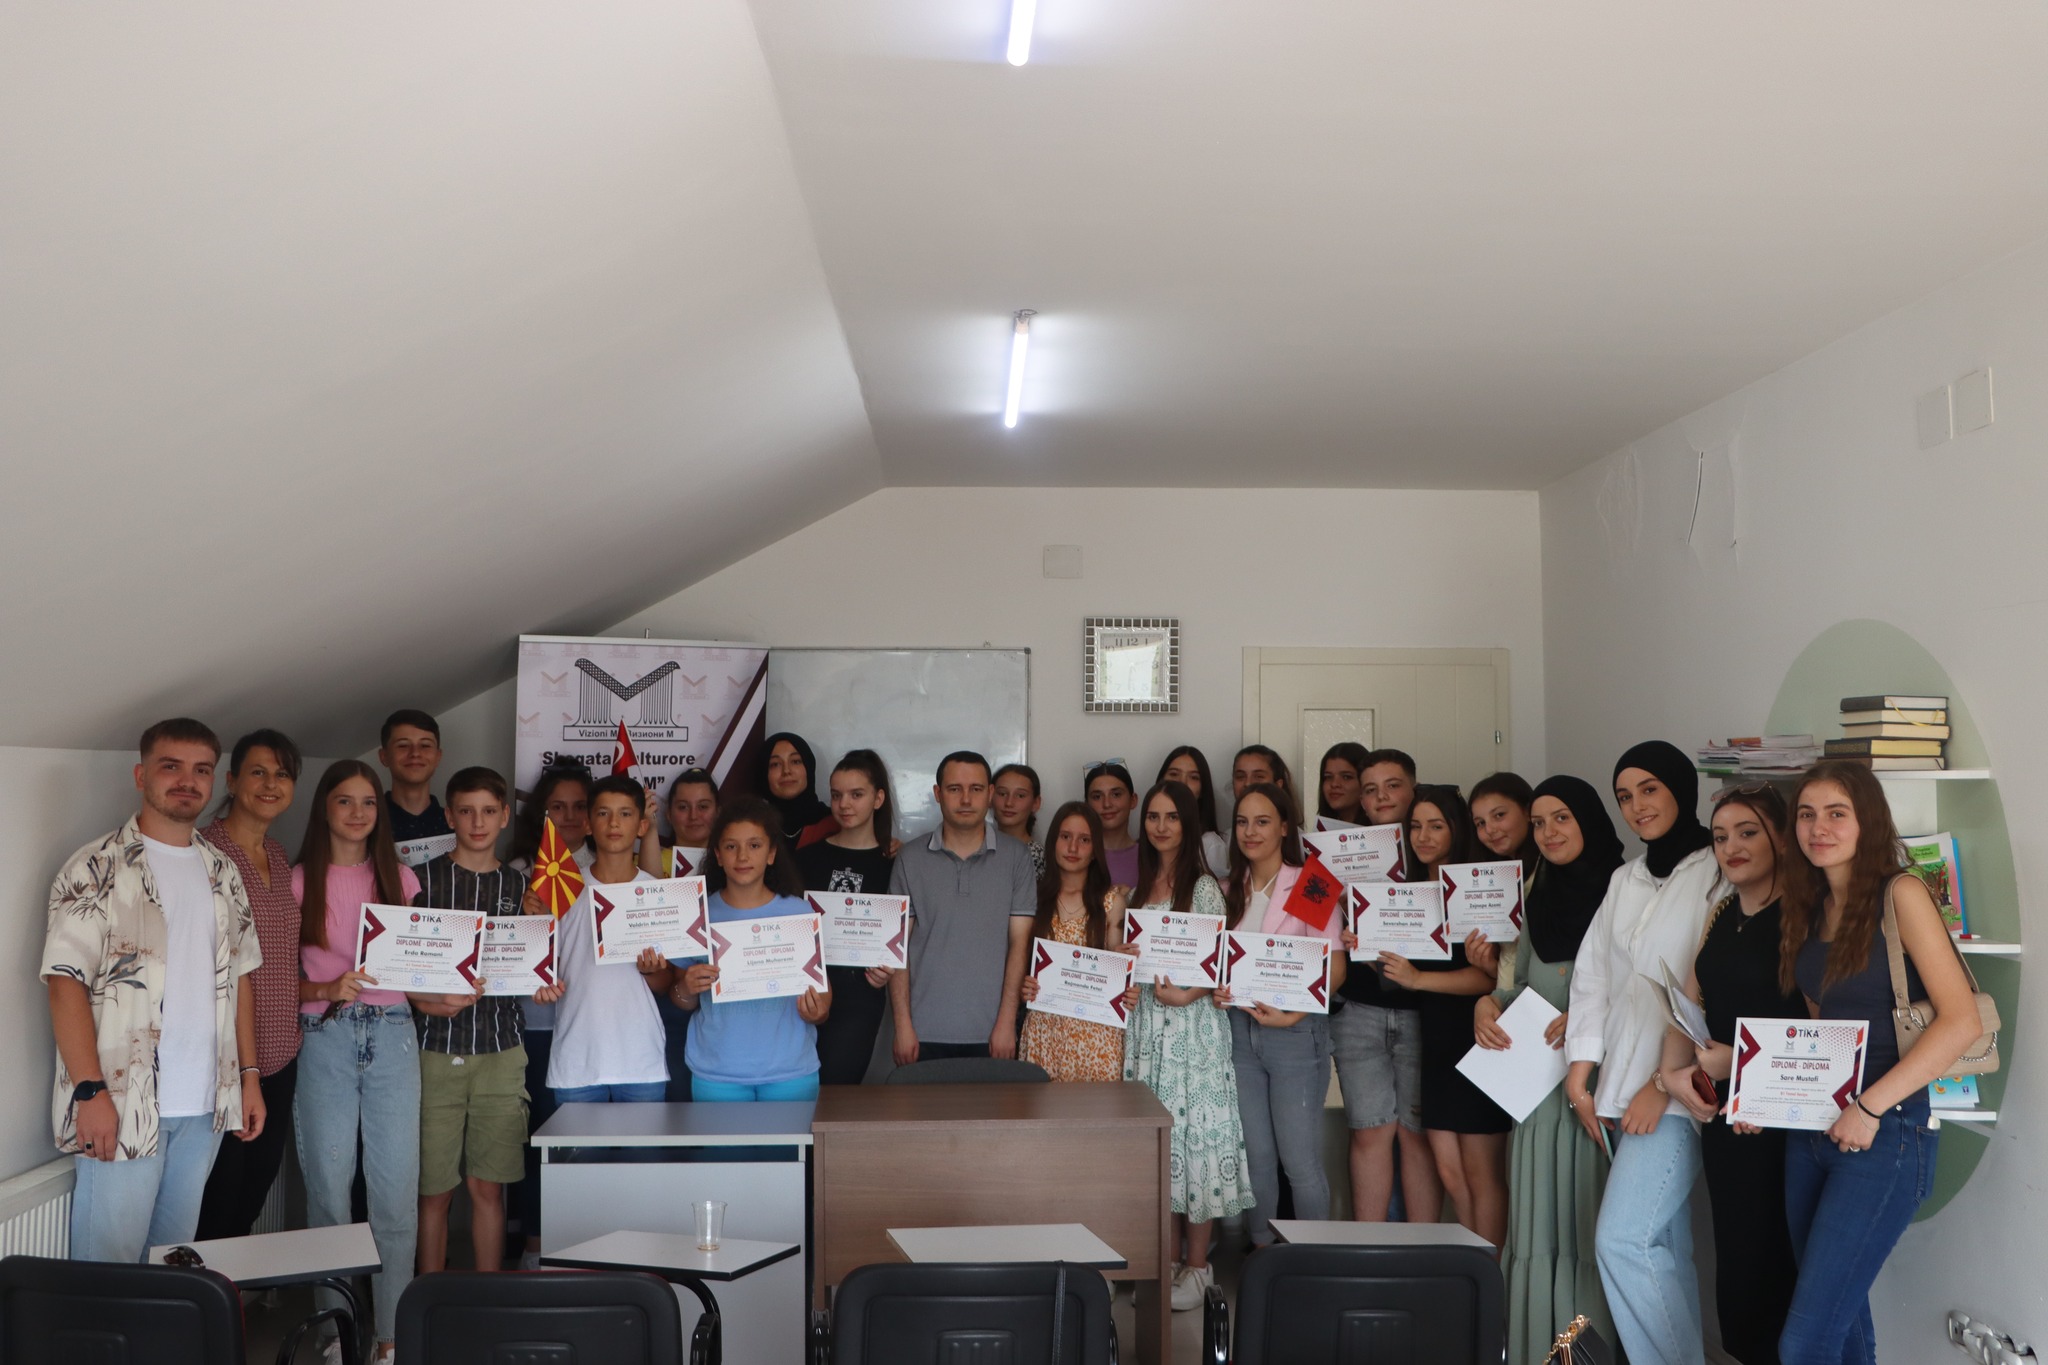 K. Makedonya’da Türkçe öğrenen öğrenciler sertifikalarını aldı